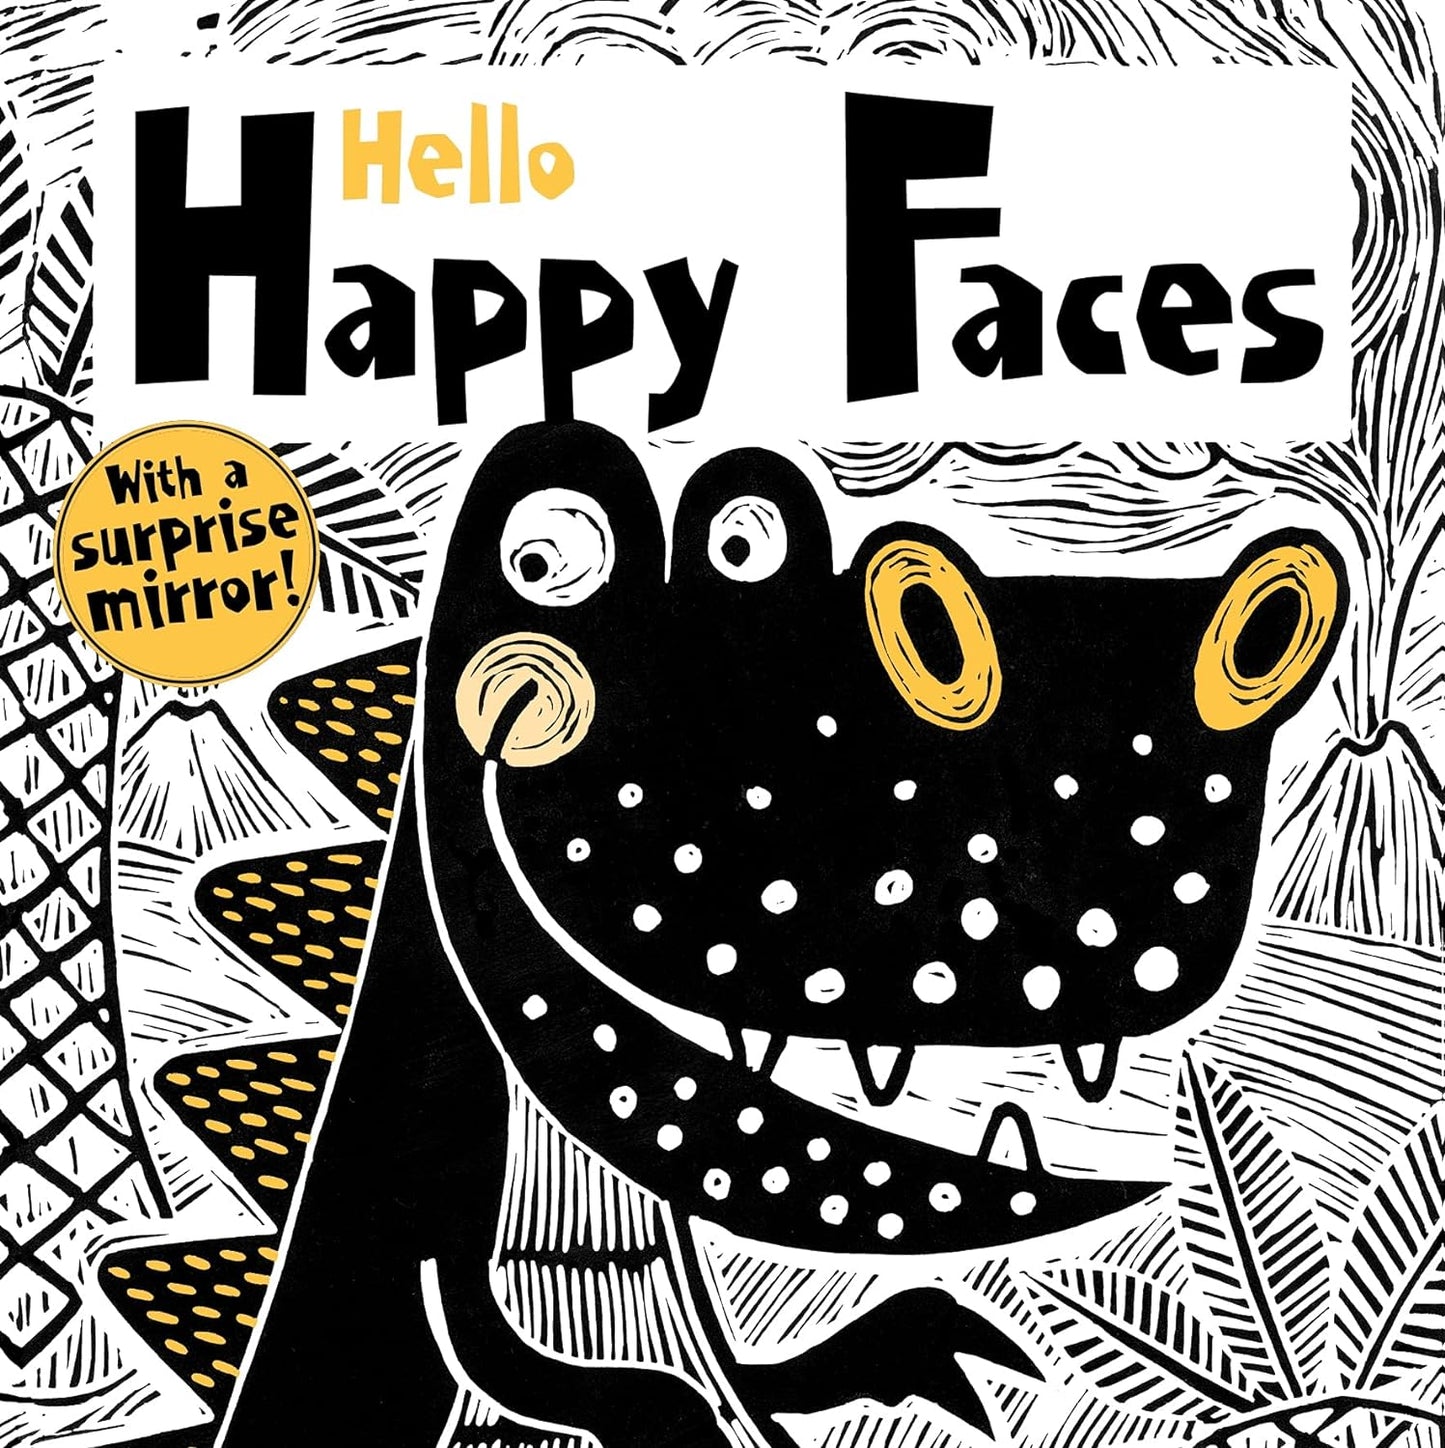 Hello Happy Faces high contrast board book